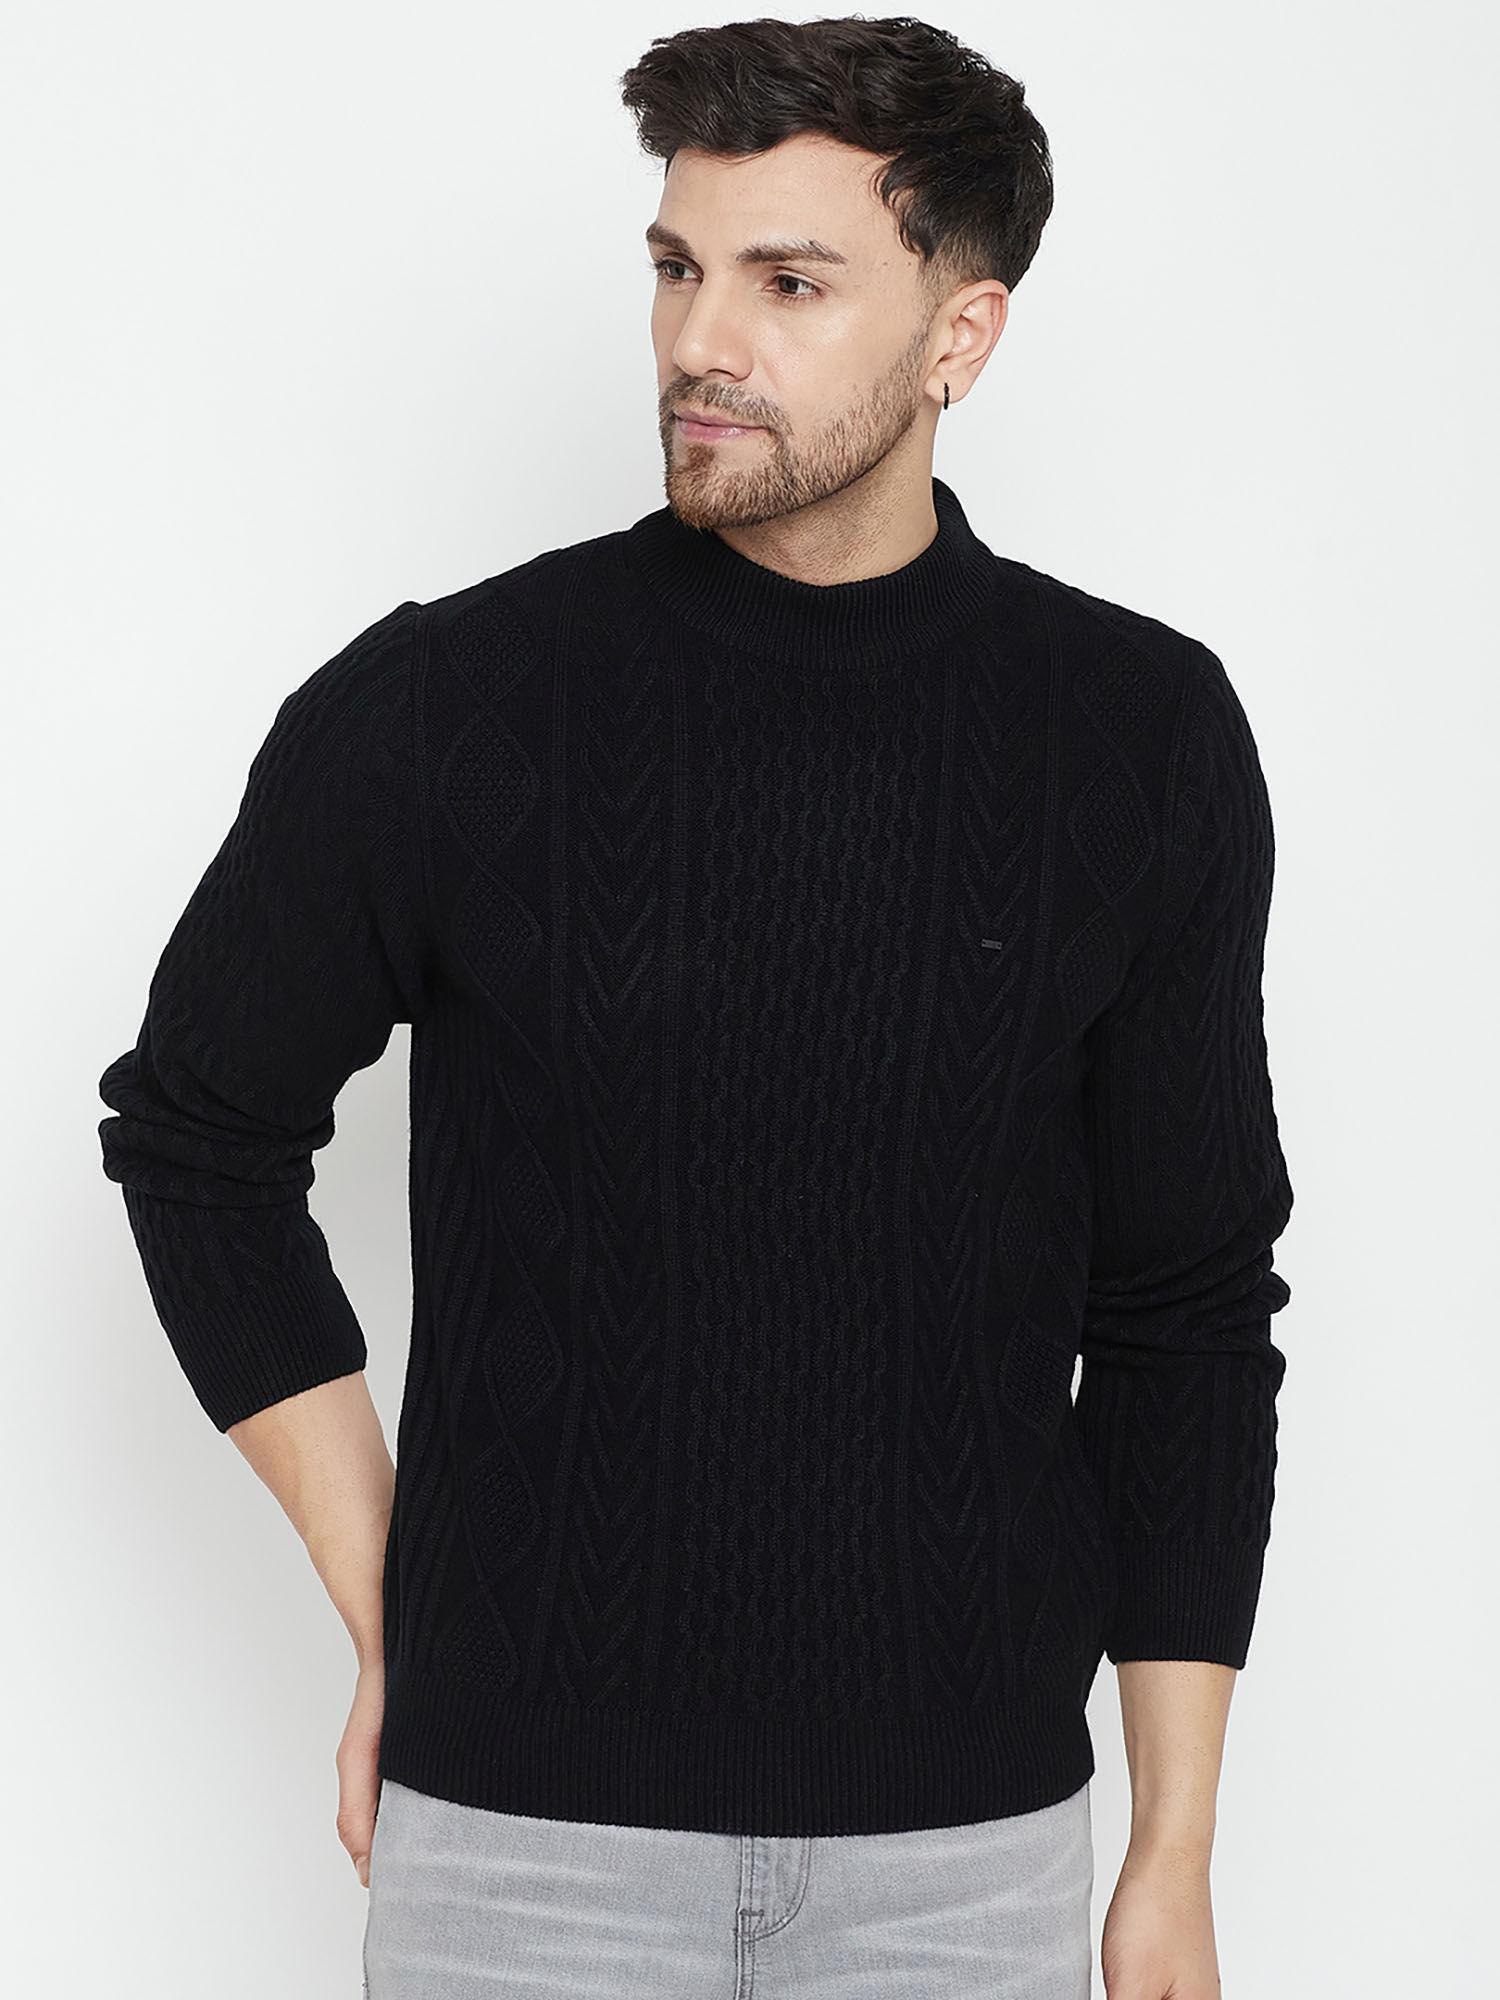 men-black-self-design-full-sleeves-round-neck-sweater